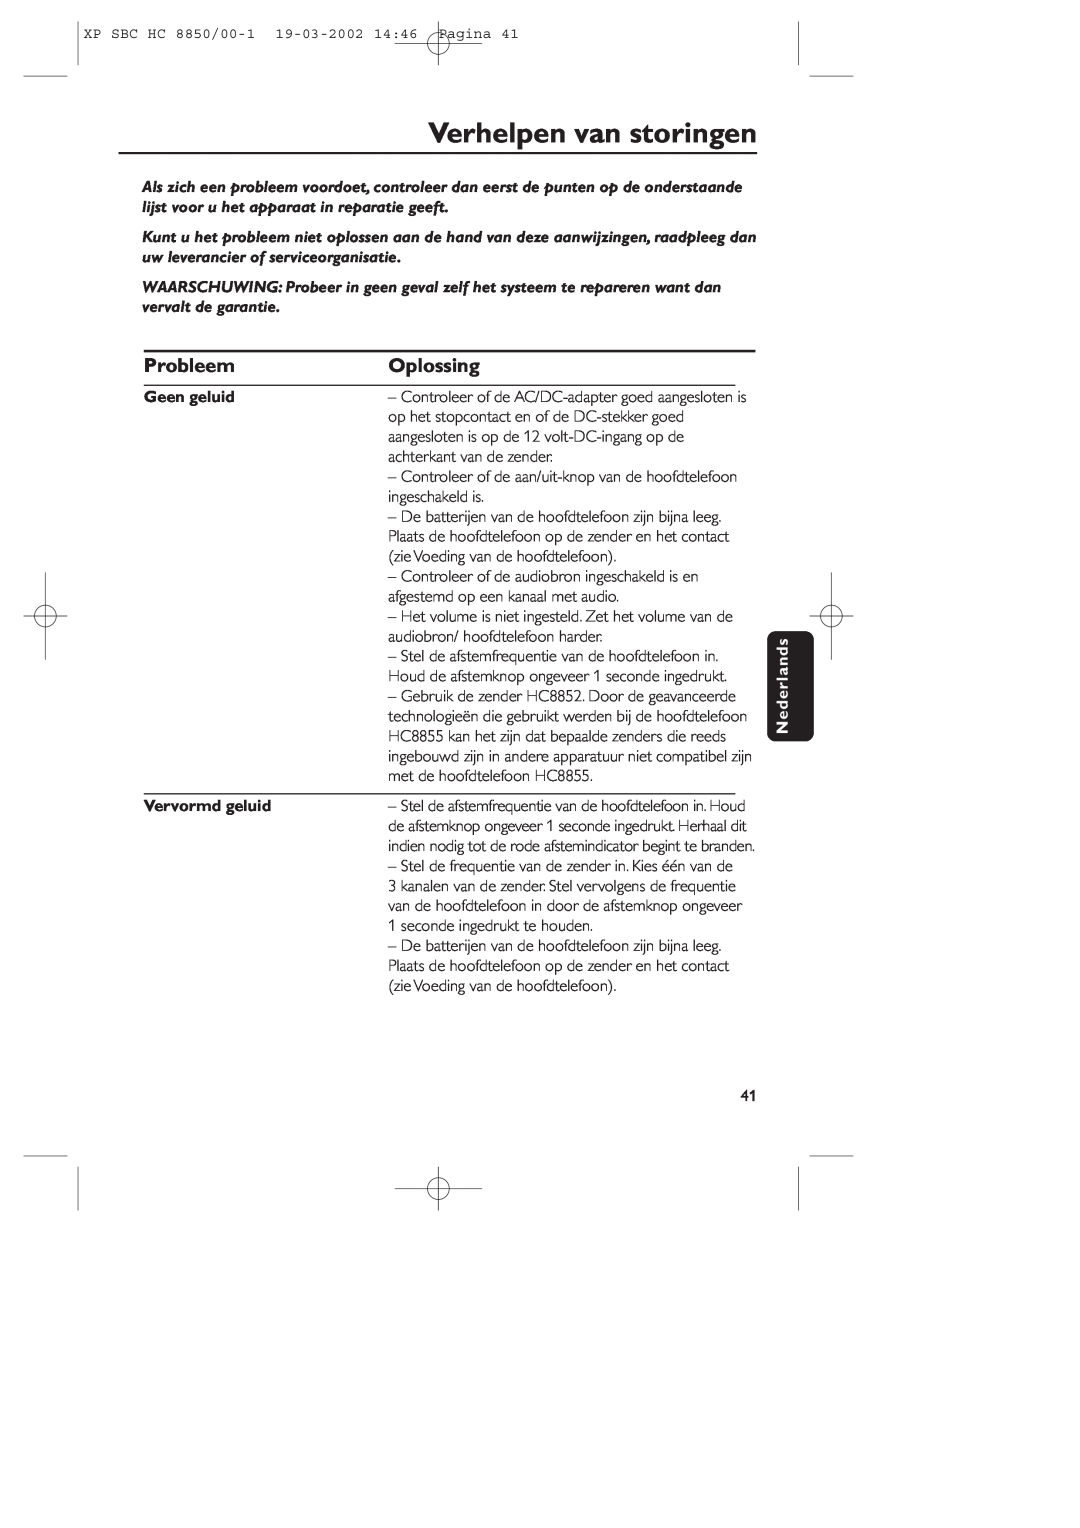 Philips HC8850 manual Verhelpen van storingen, Probleem, Oplossing, Geen geluid, Vervormd geluid, Nederlands 